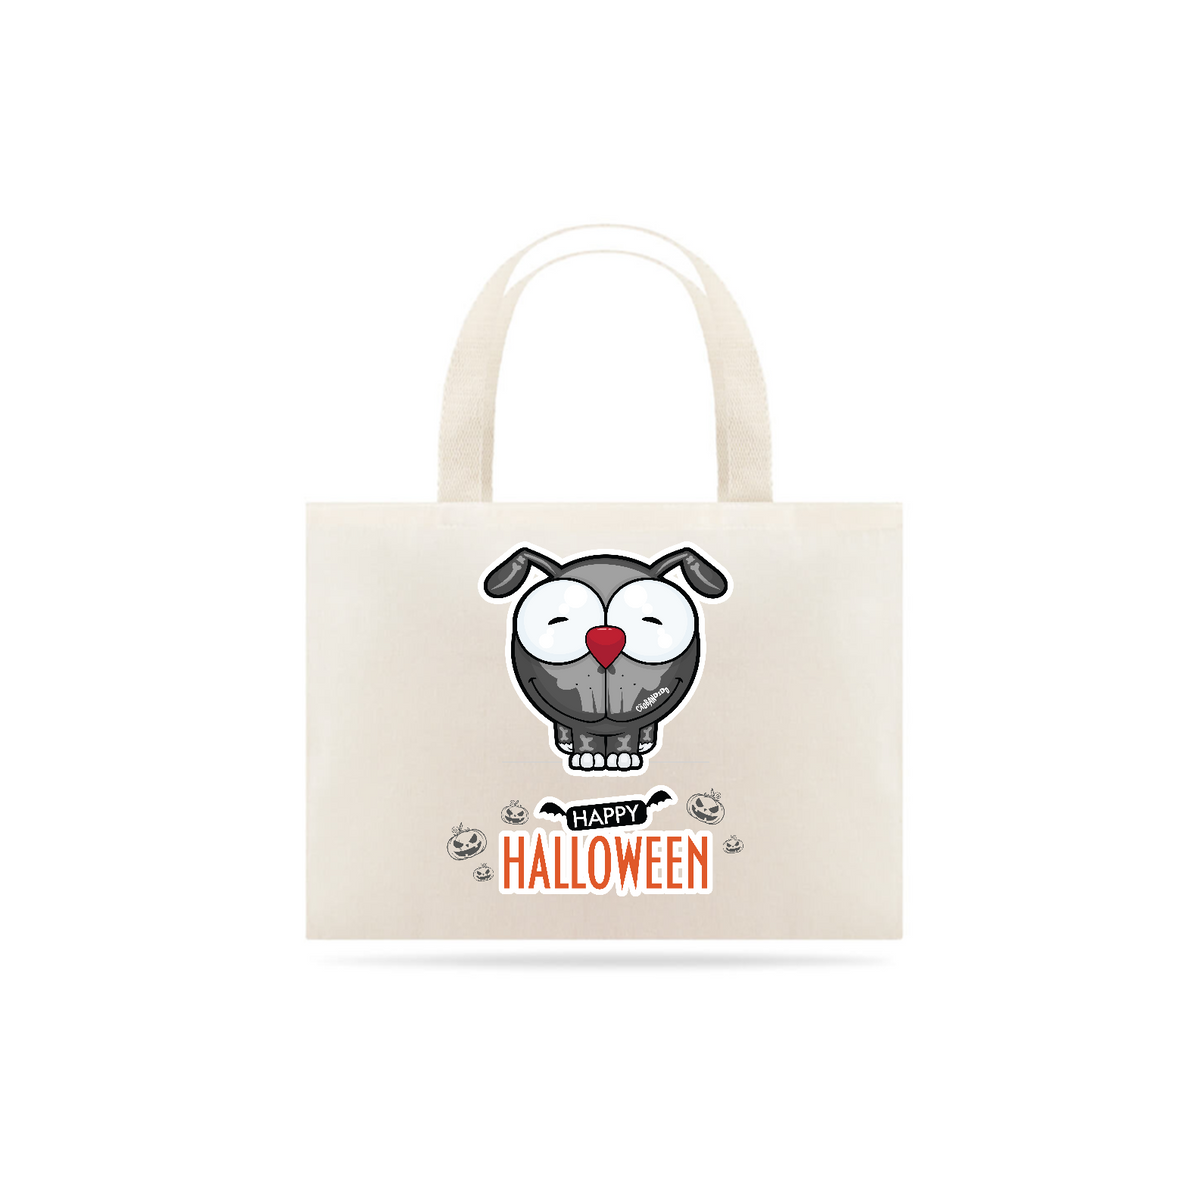 Nome do produto: Ecobag Happy Halloween Cartoon Doggy